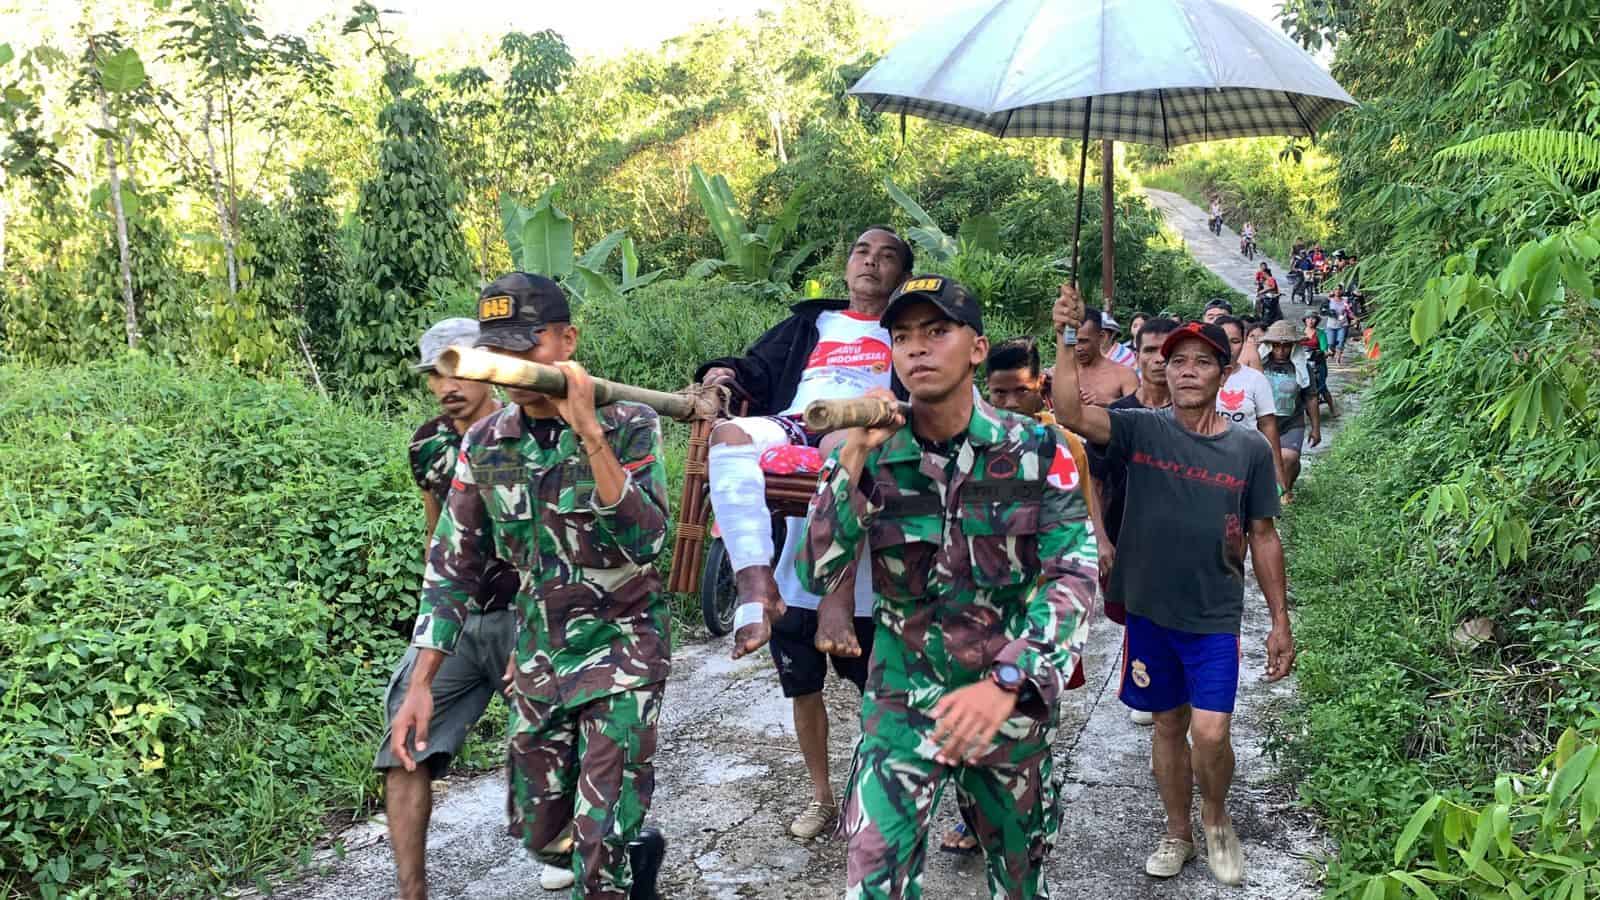 Personel Satgas Pamtas RI-MLY Yonif 645/Gty Bantu Menandu Warga Yang Sakit Sejauh 5 Kilometer